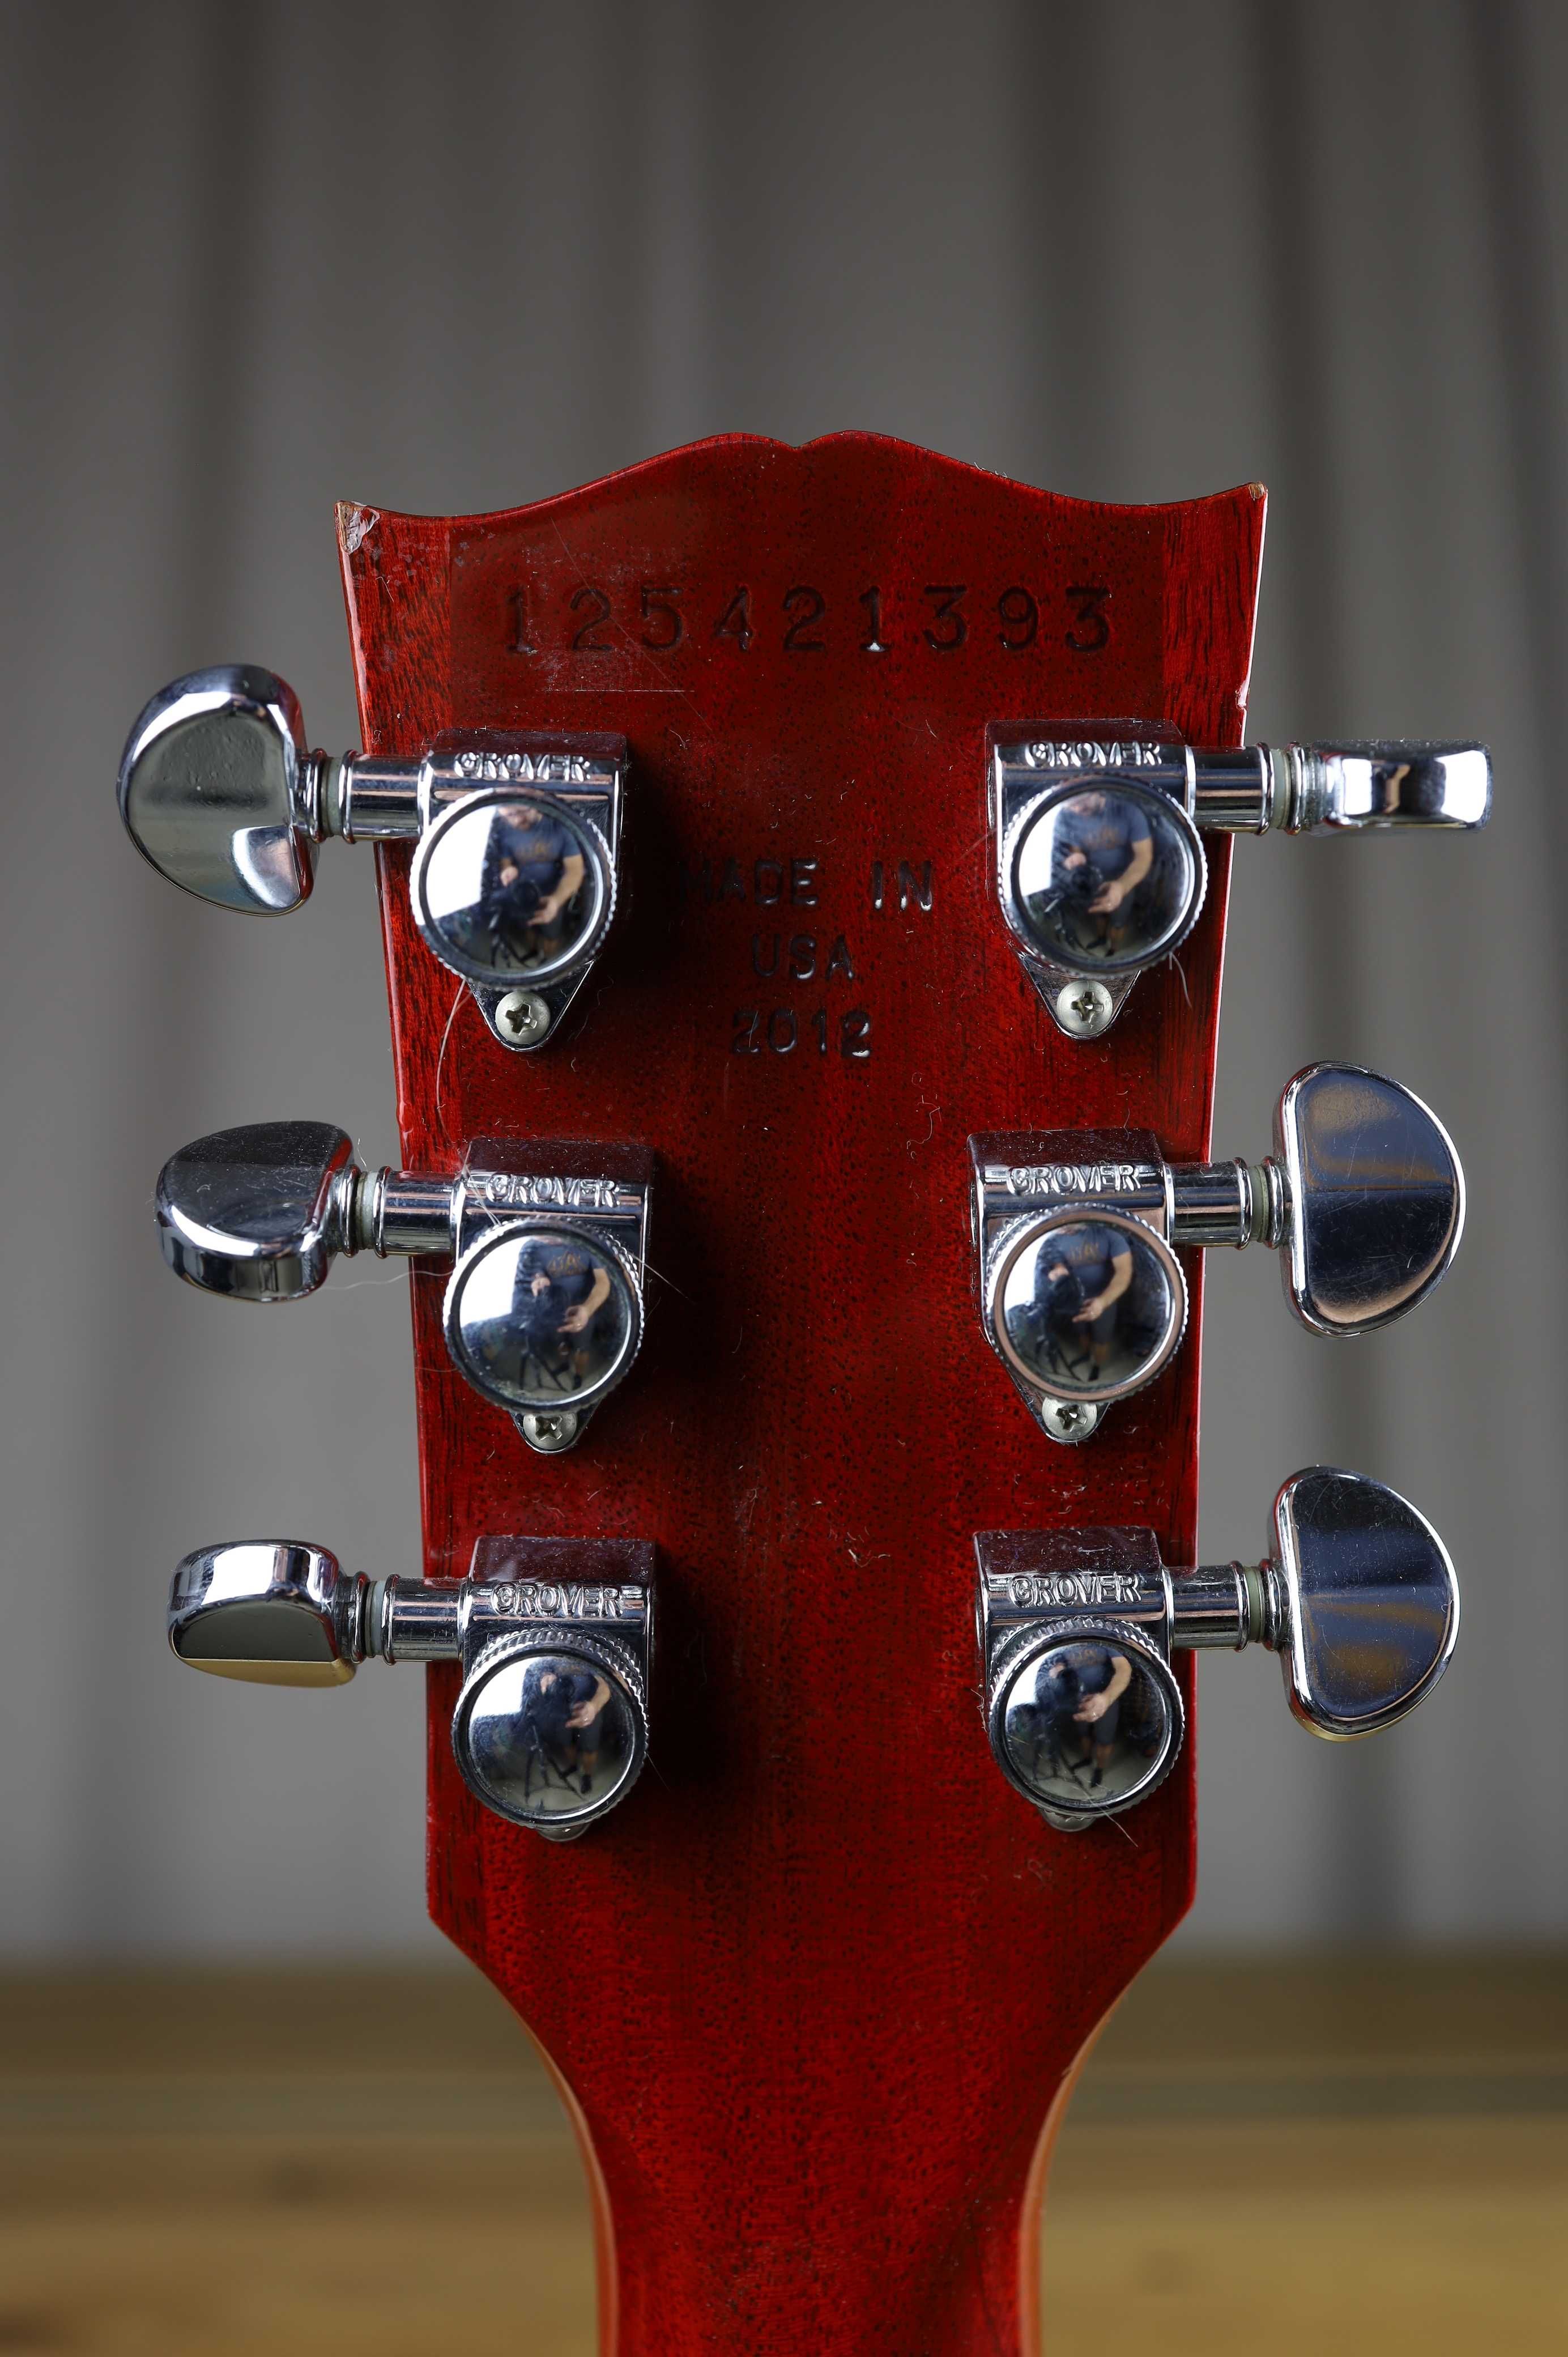 Gibson Les Paul Standard - 2012, Sunburst AAA top